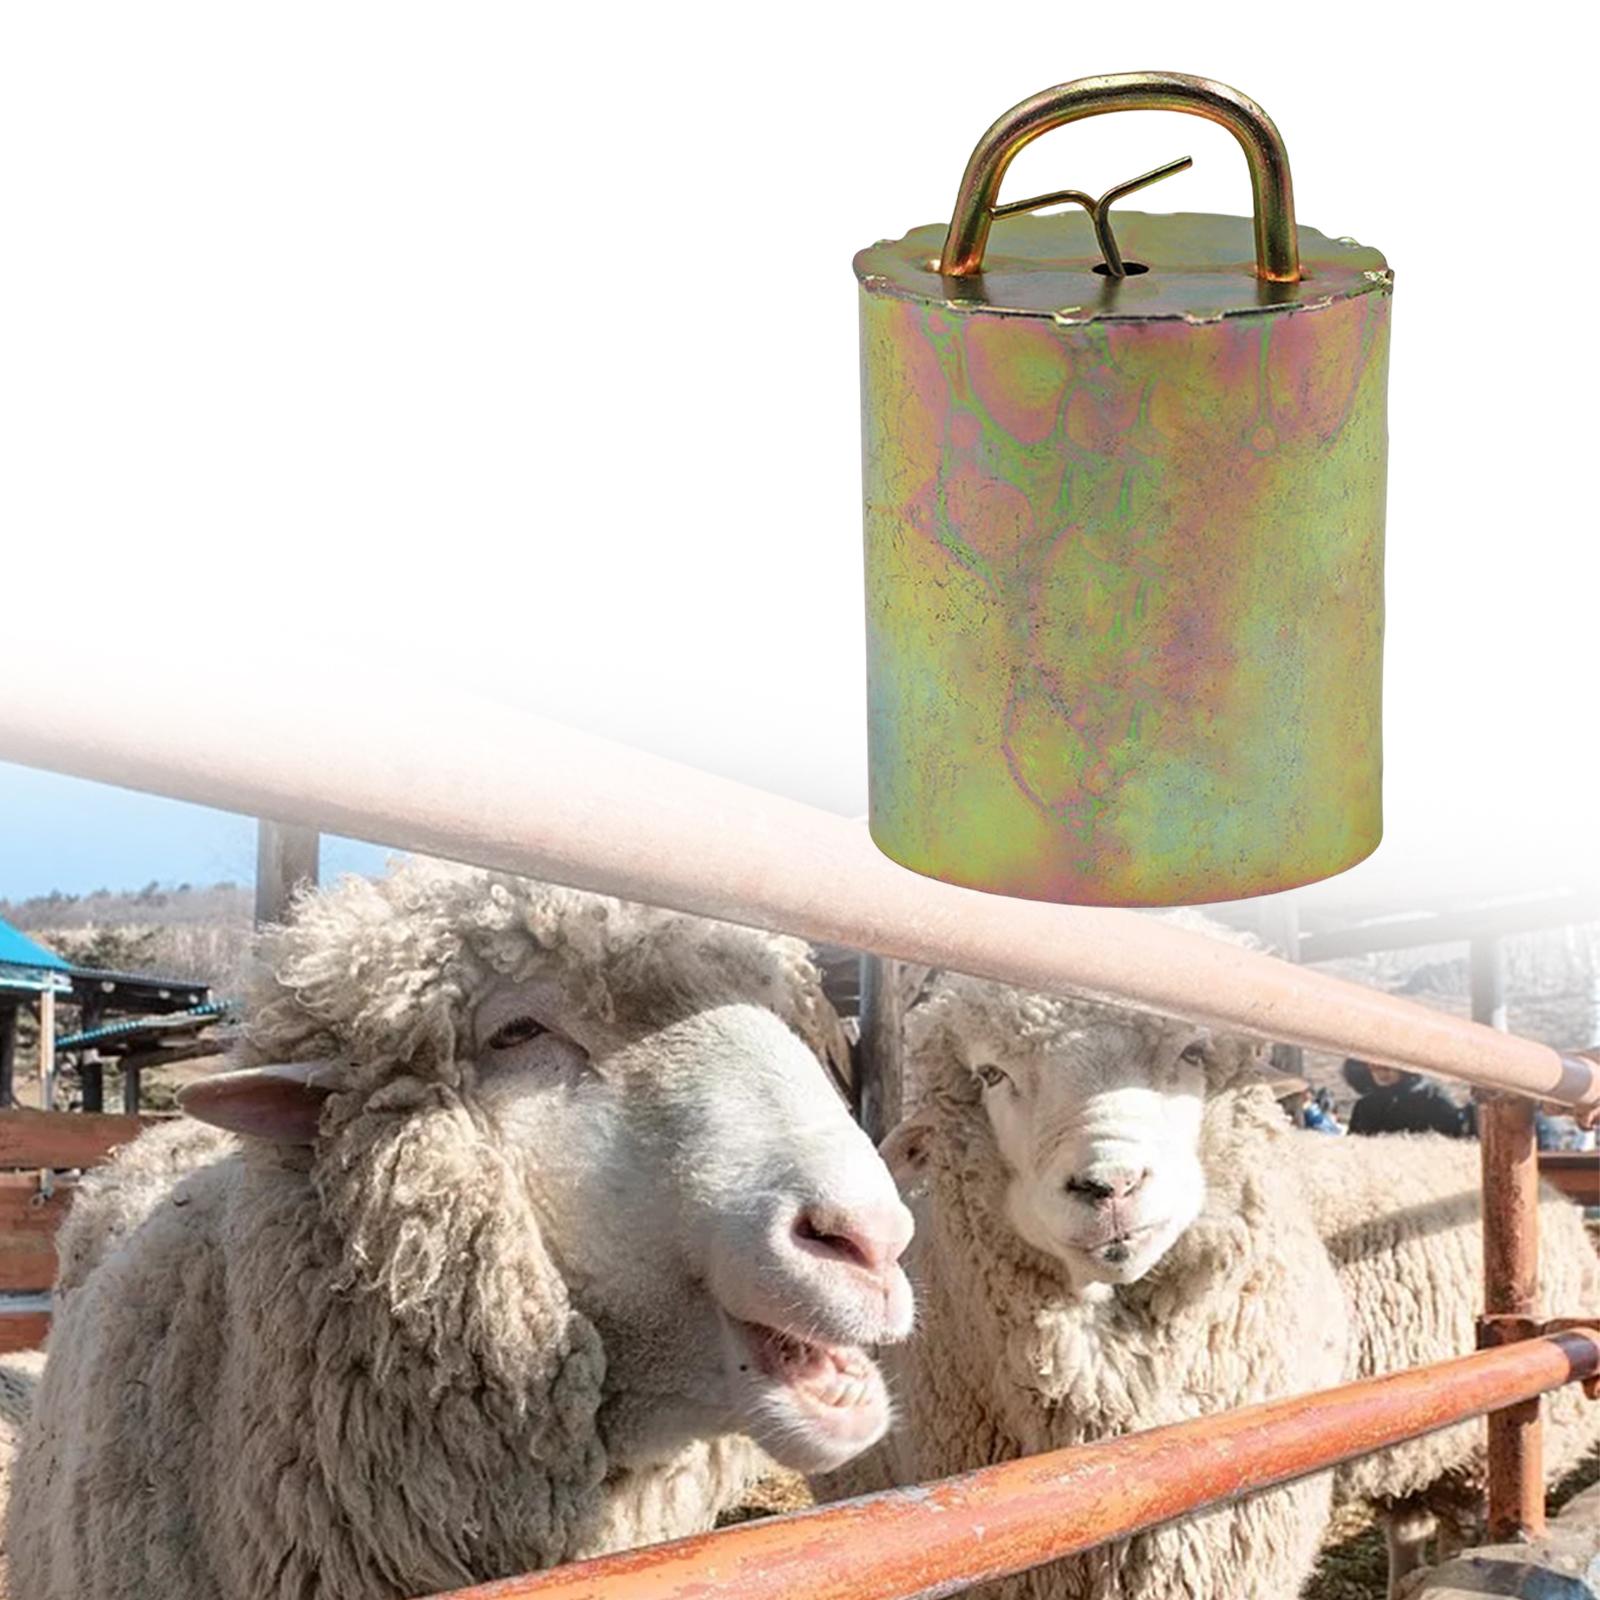 Grazing Bell Crisp Loud Bell Noisemaker Farm for Sheep Goats Accessories M